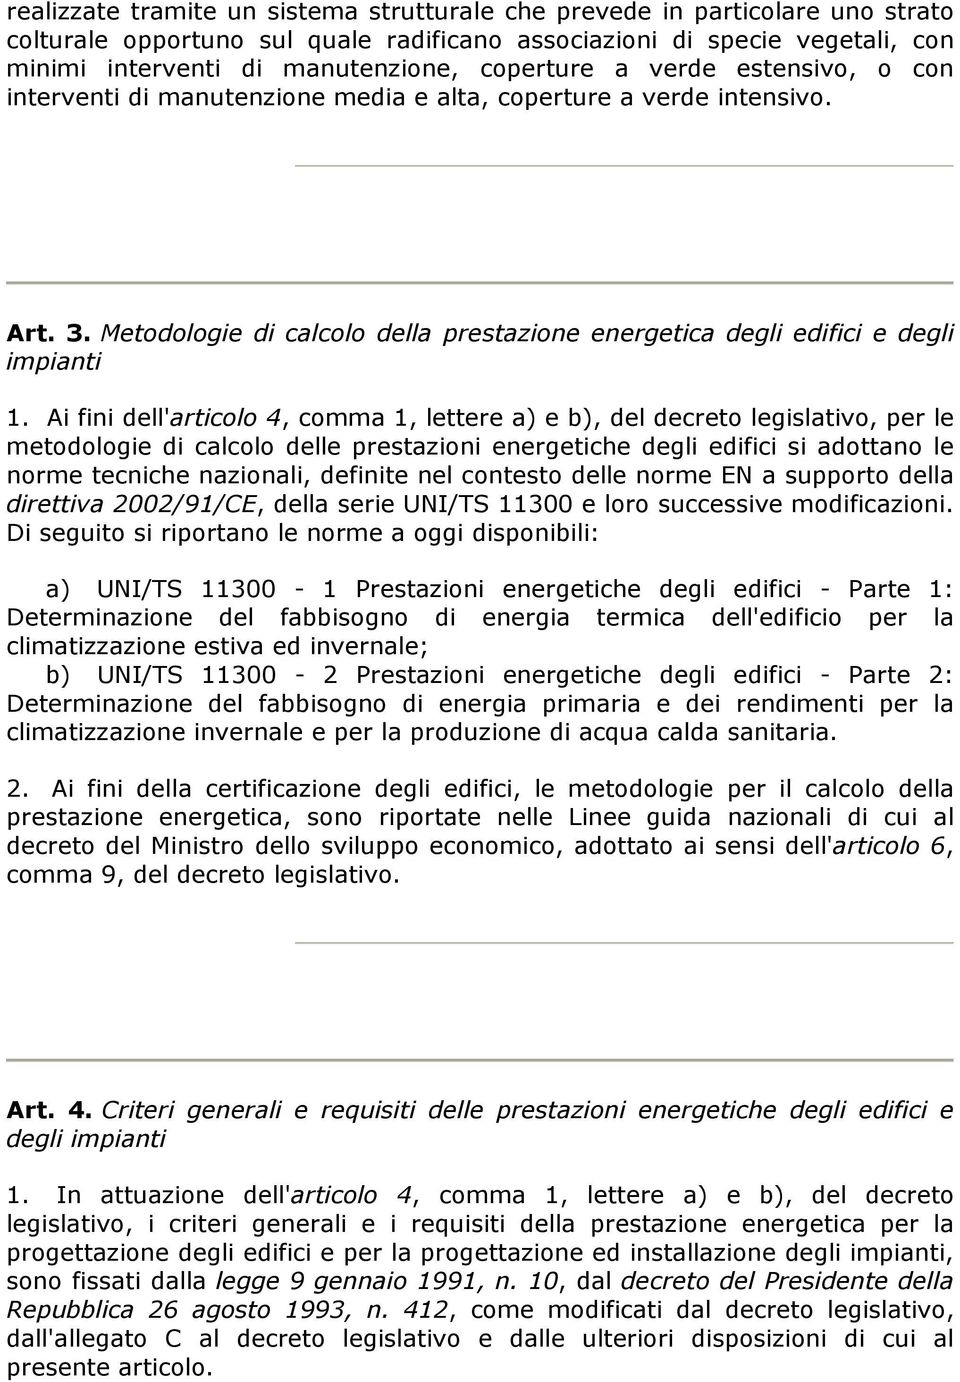 Ai fini dell'articolo 4, comma 1, lettere a) e b), del decreto legislativo, per le metodologie di calcolo delle prestazioni energetiche degli edifici si adottano le norme tecniche nazionali, definite